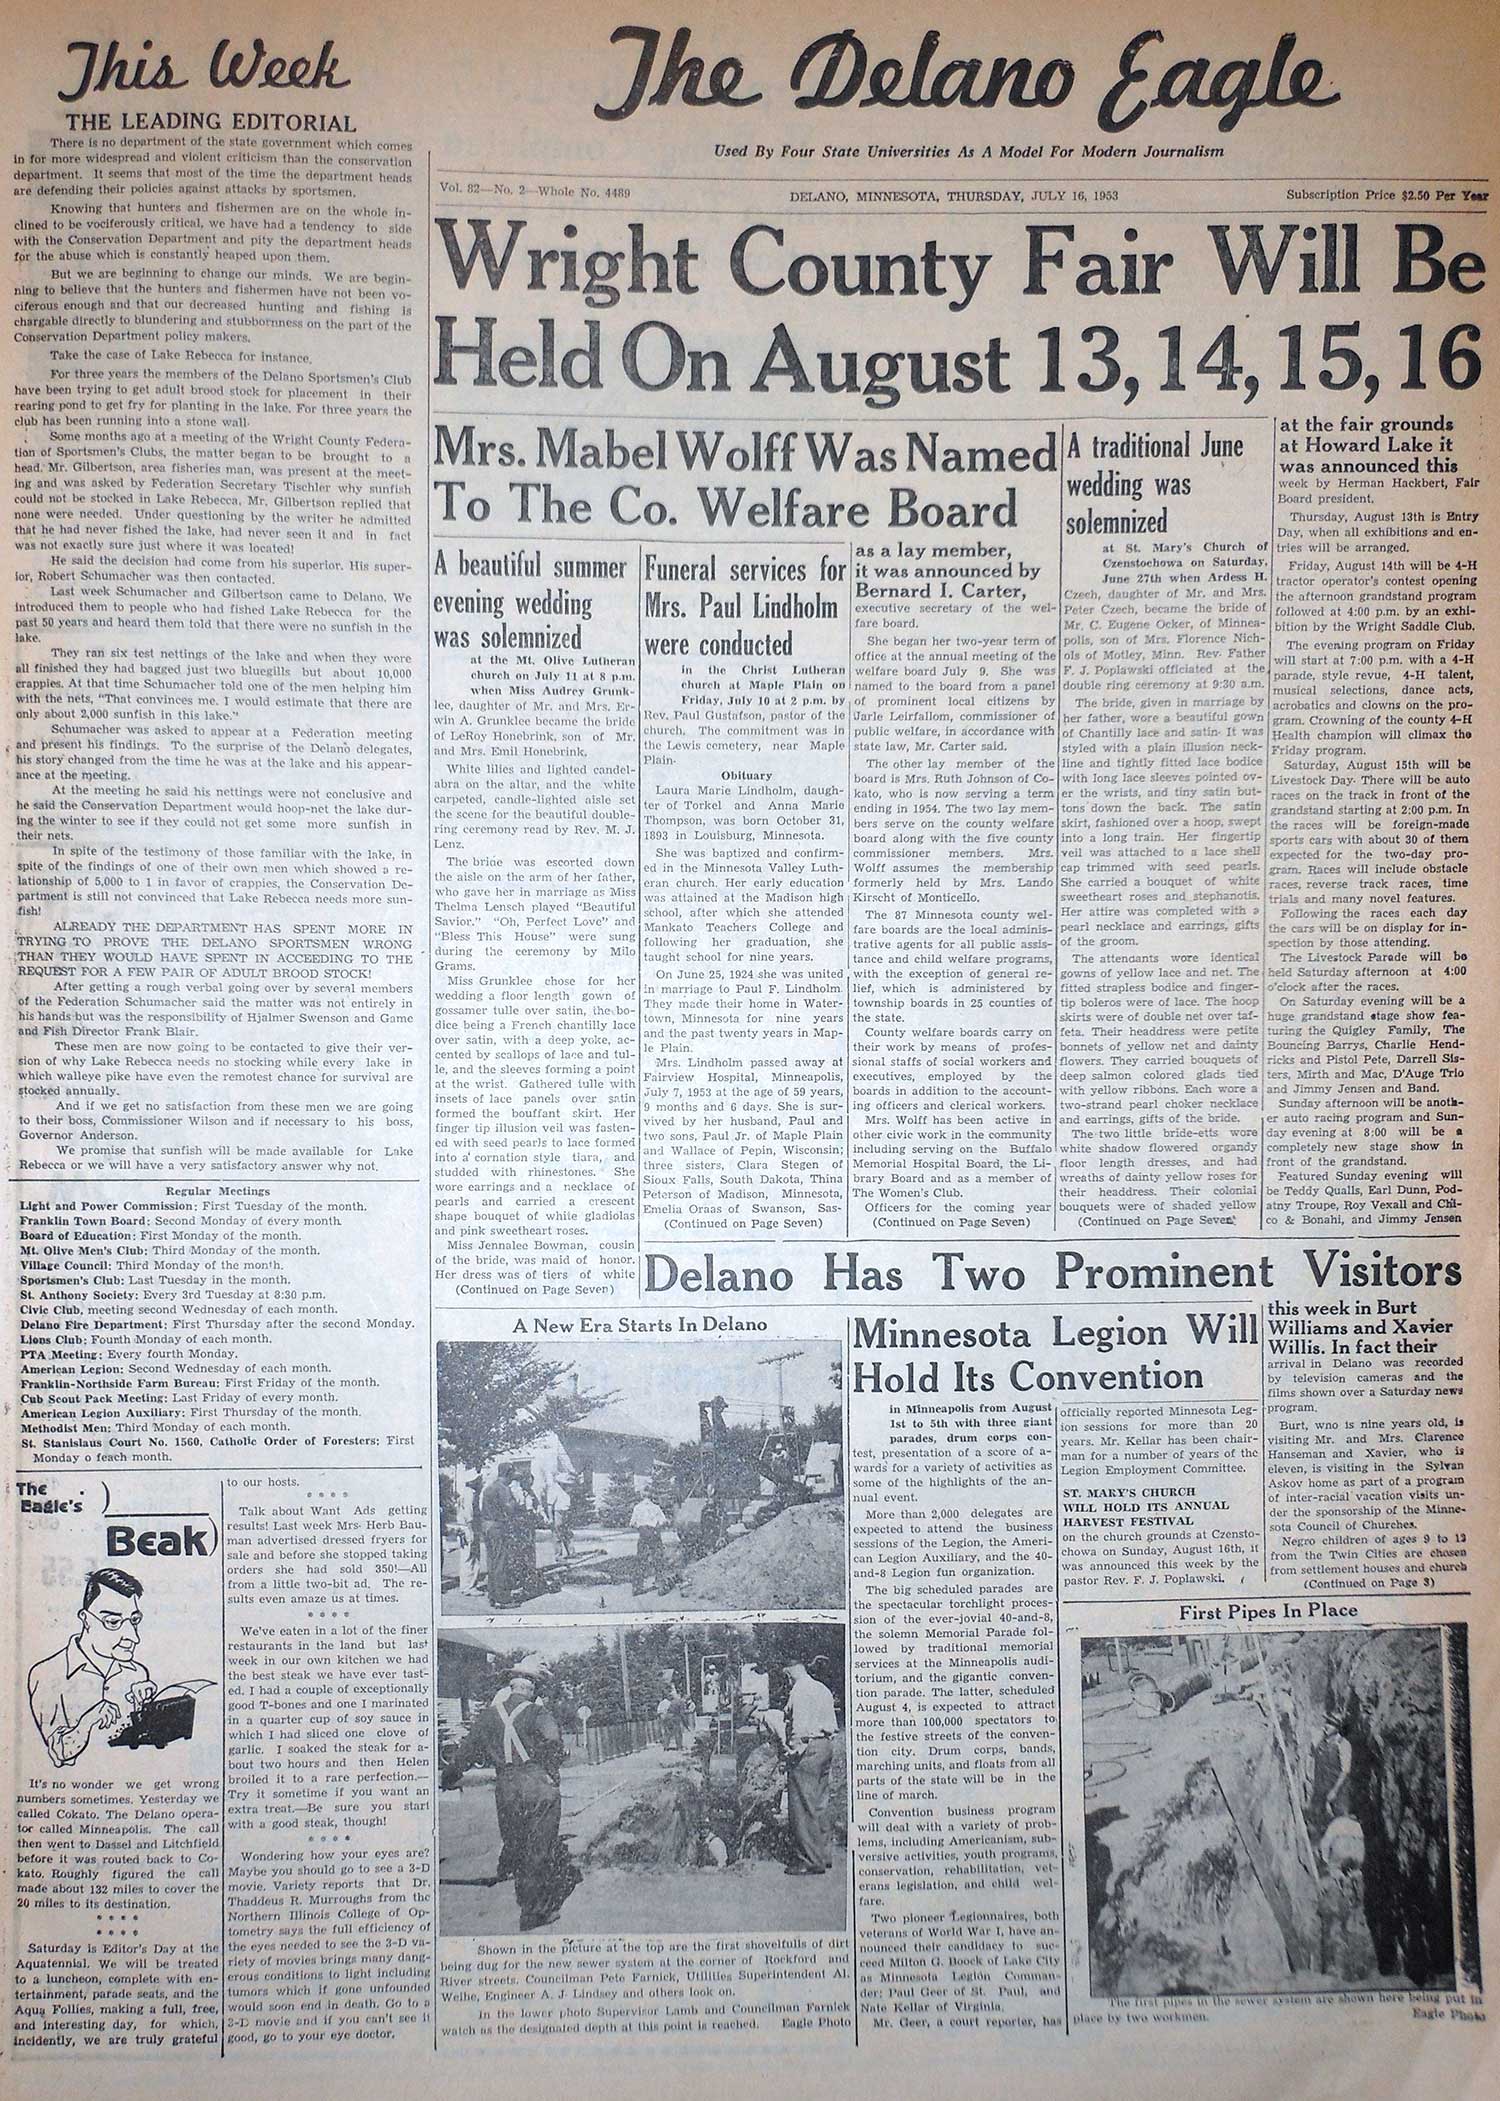 7/16/1953, p1